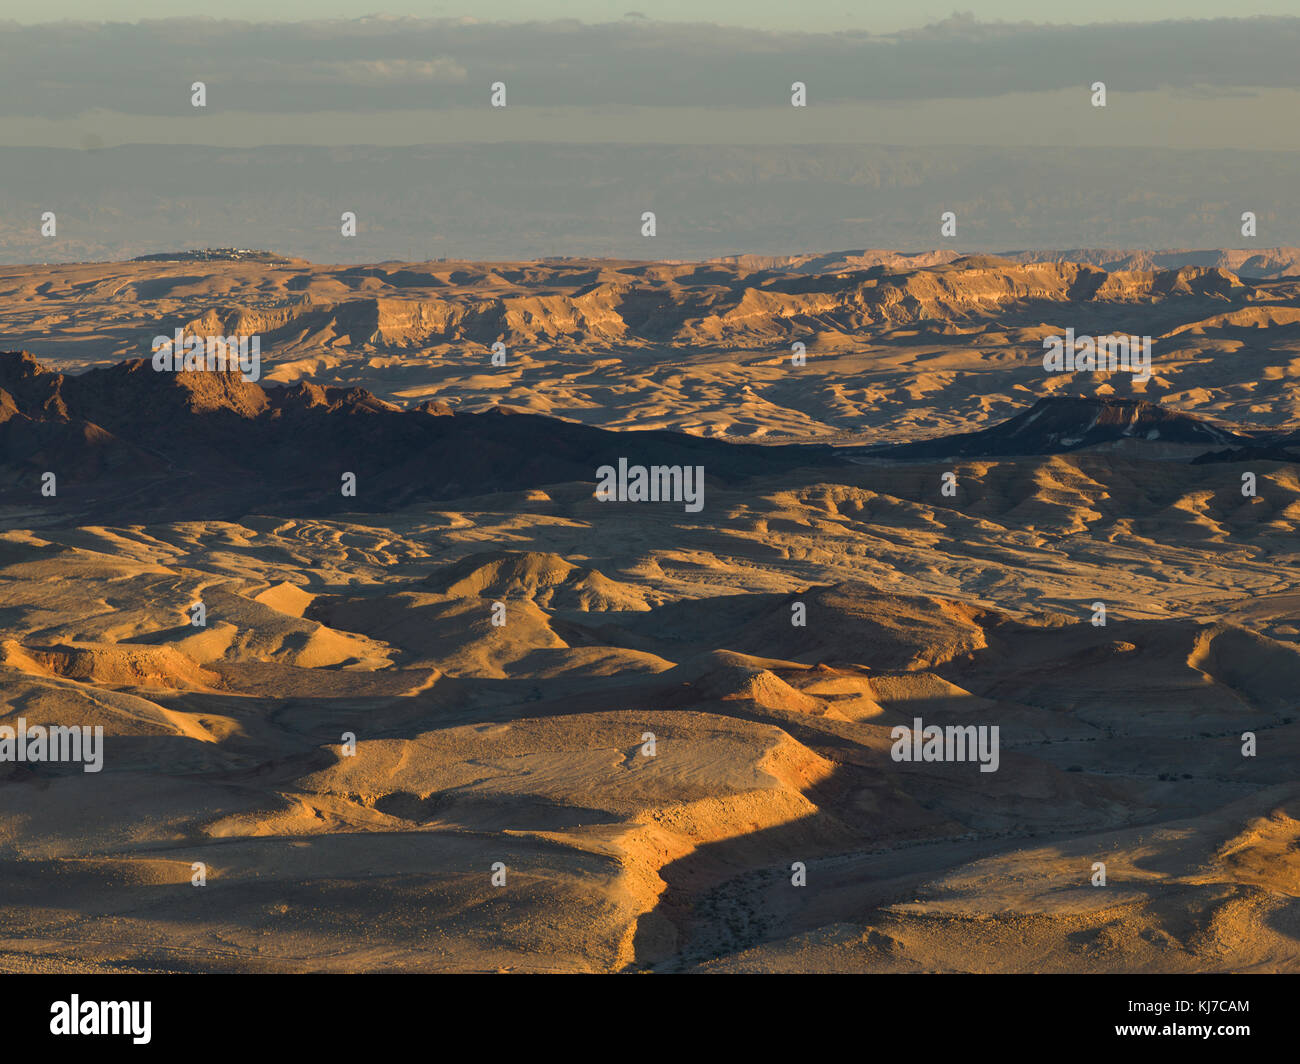 Scenic view of desert, Makhtesh Ramon, Negev Desert, Israel Stock Photo